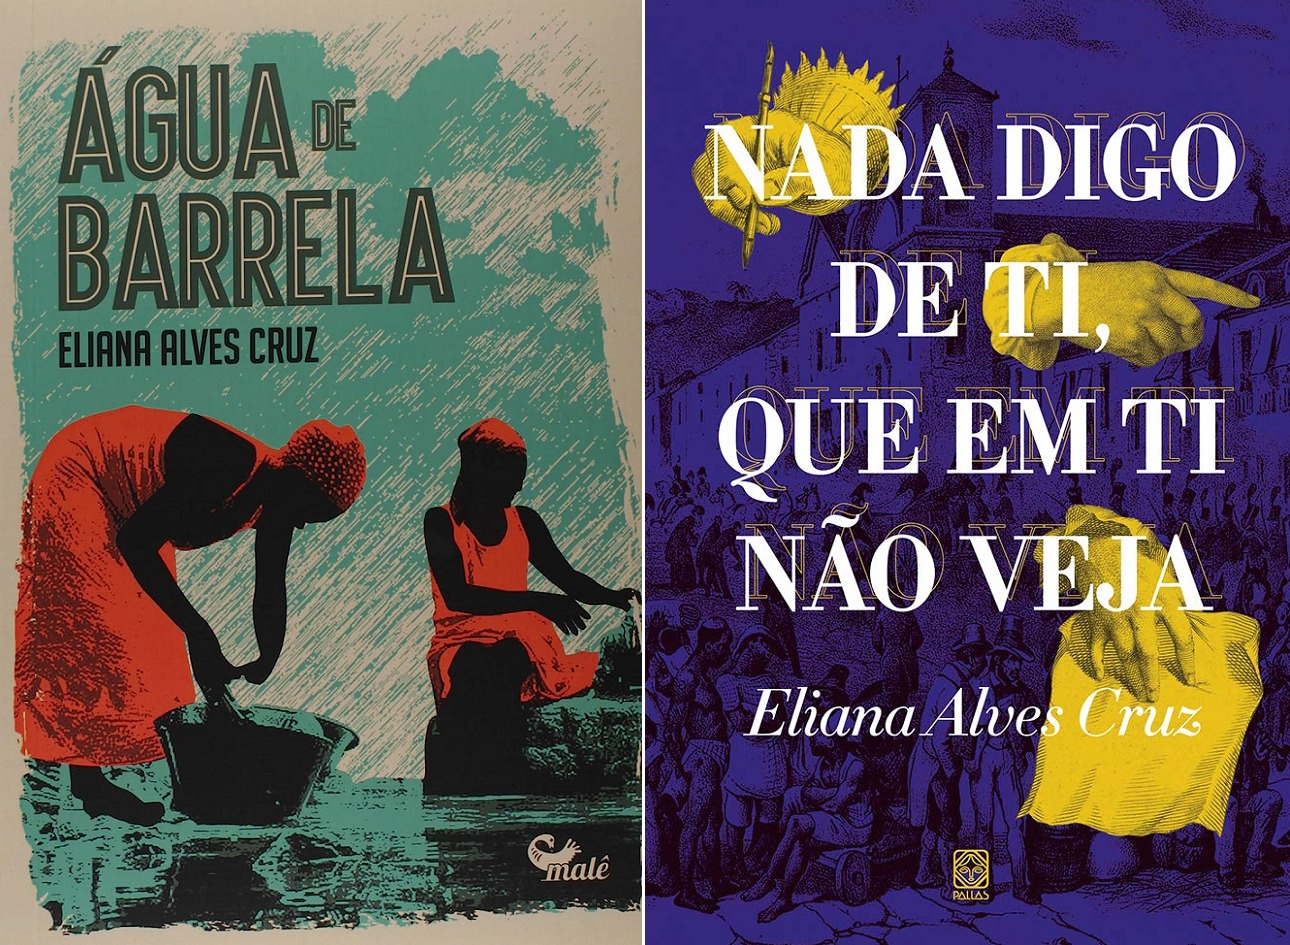 As capas das edições de "Água de barrela" e "Nada digo de ti, que em ti não veja", de Eliana Alves Cruz